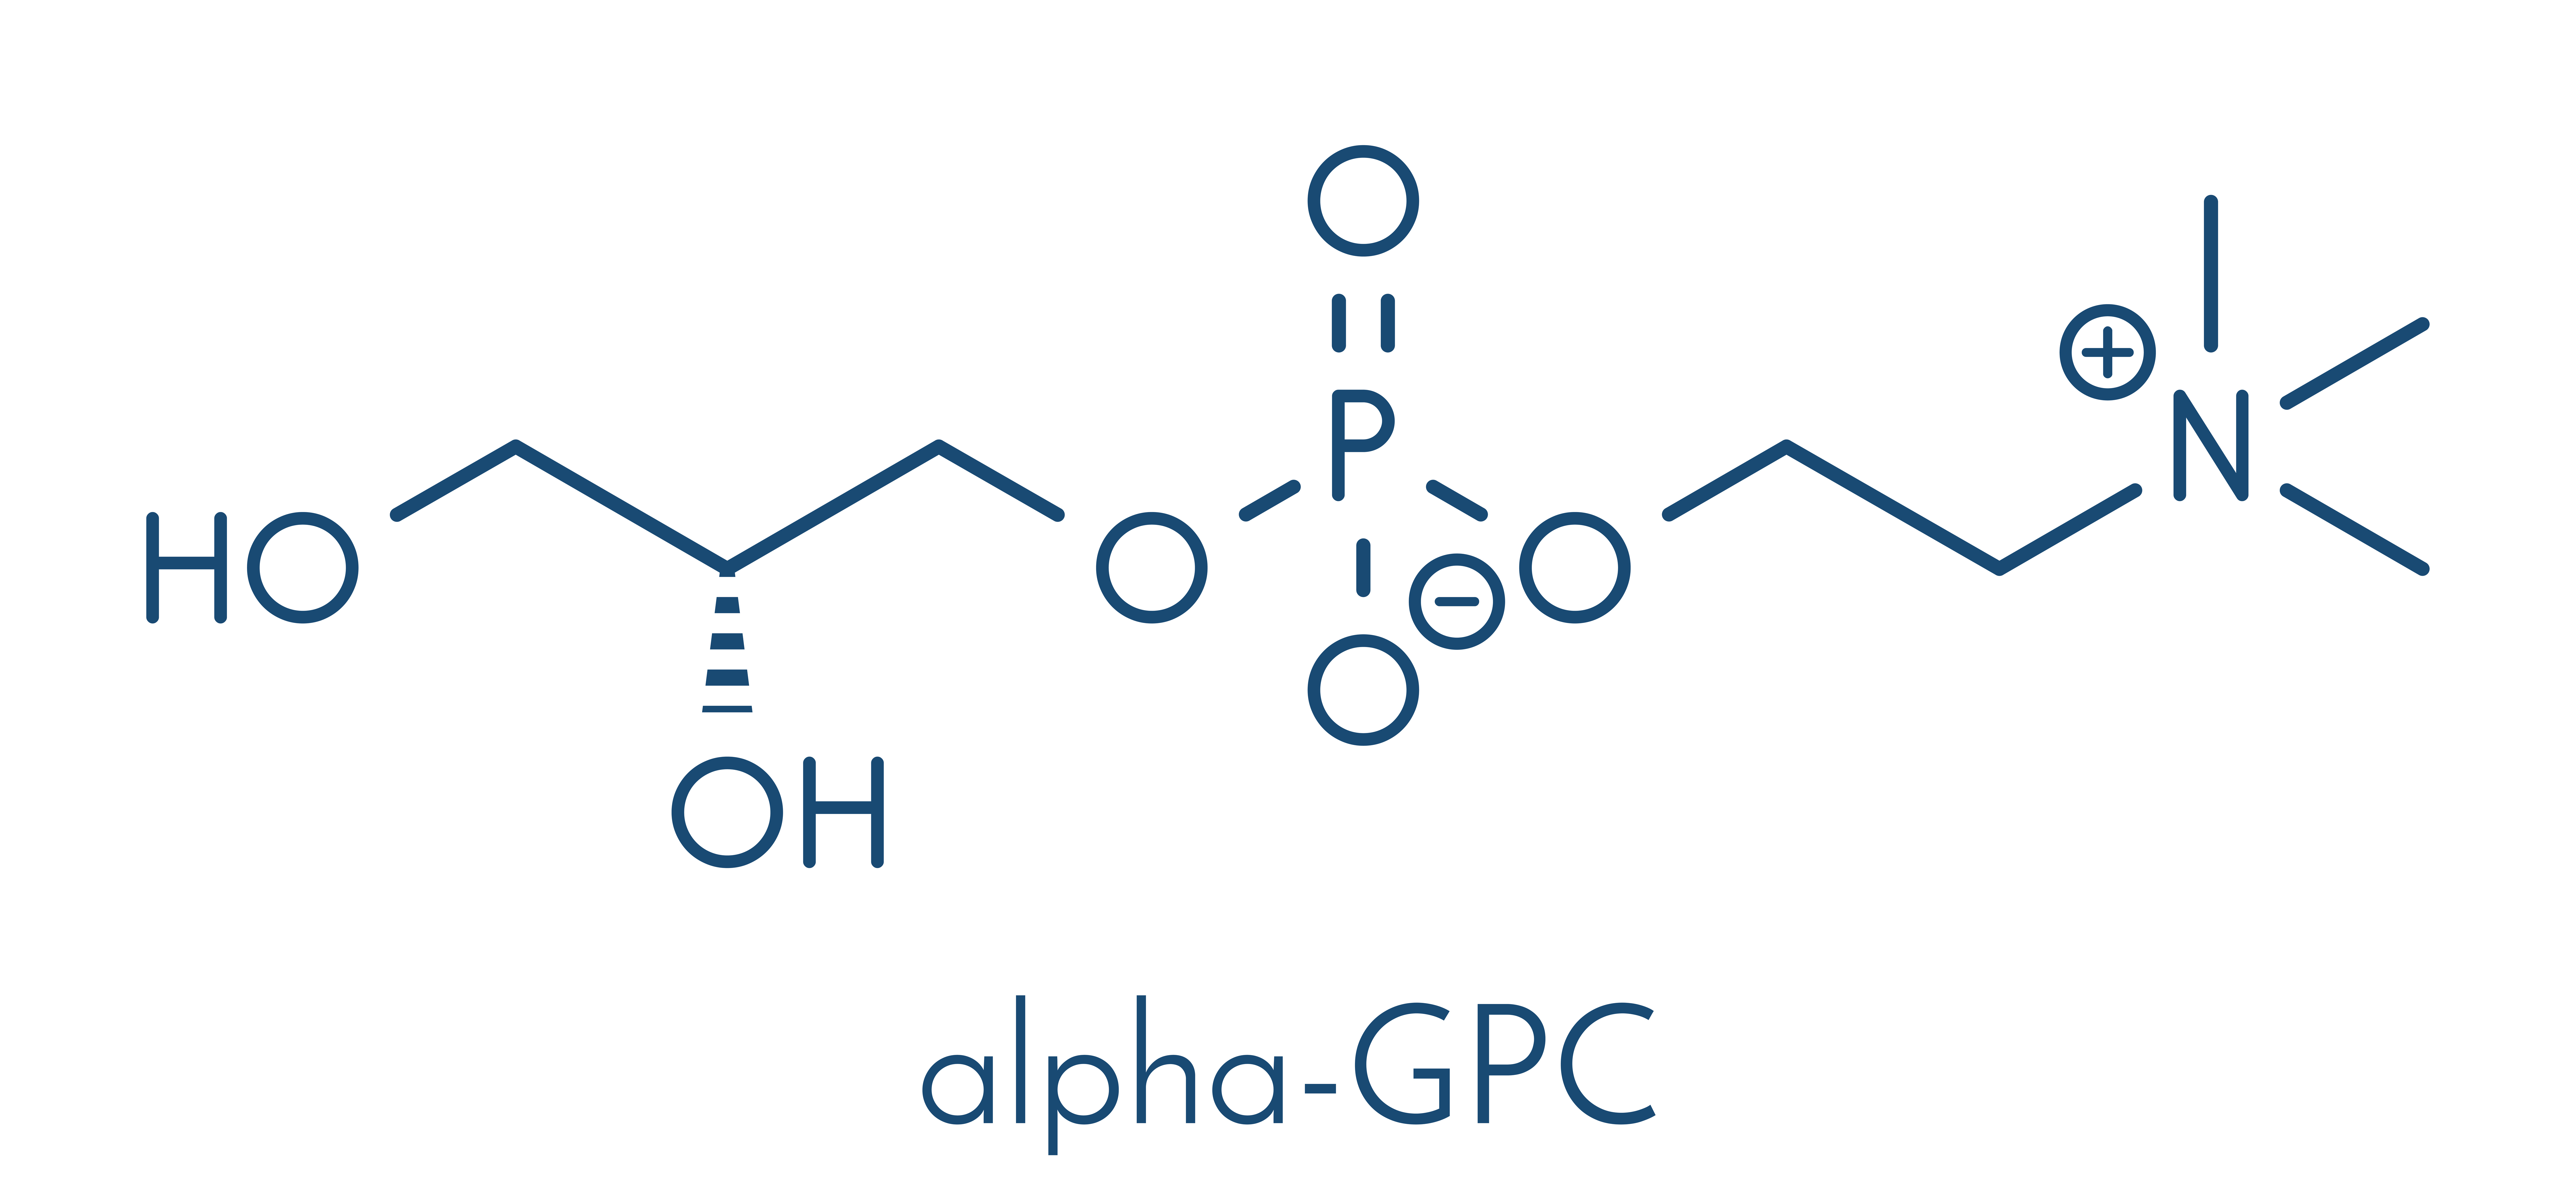 Alpha-GPC compound